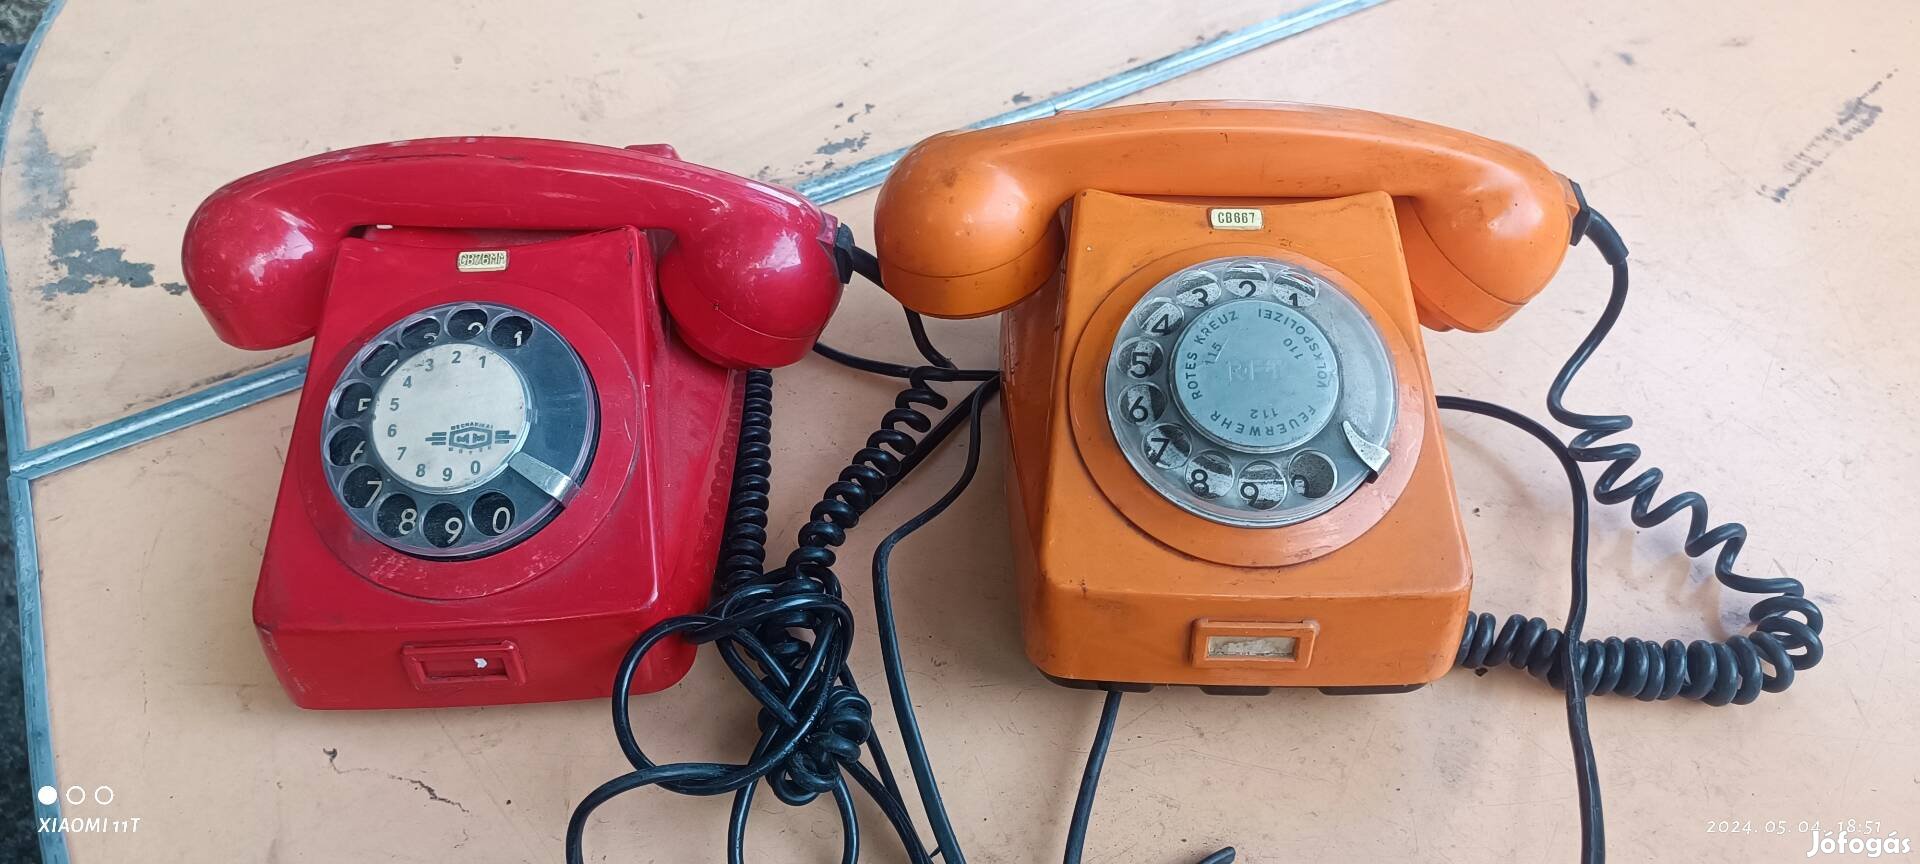 Retro piros és narancs telefon +1 fekete kábel hiányos. Posta 